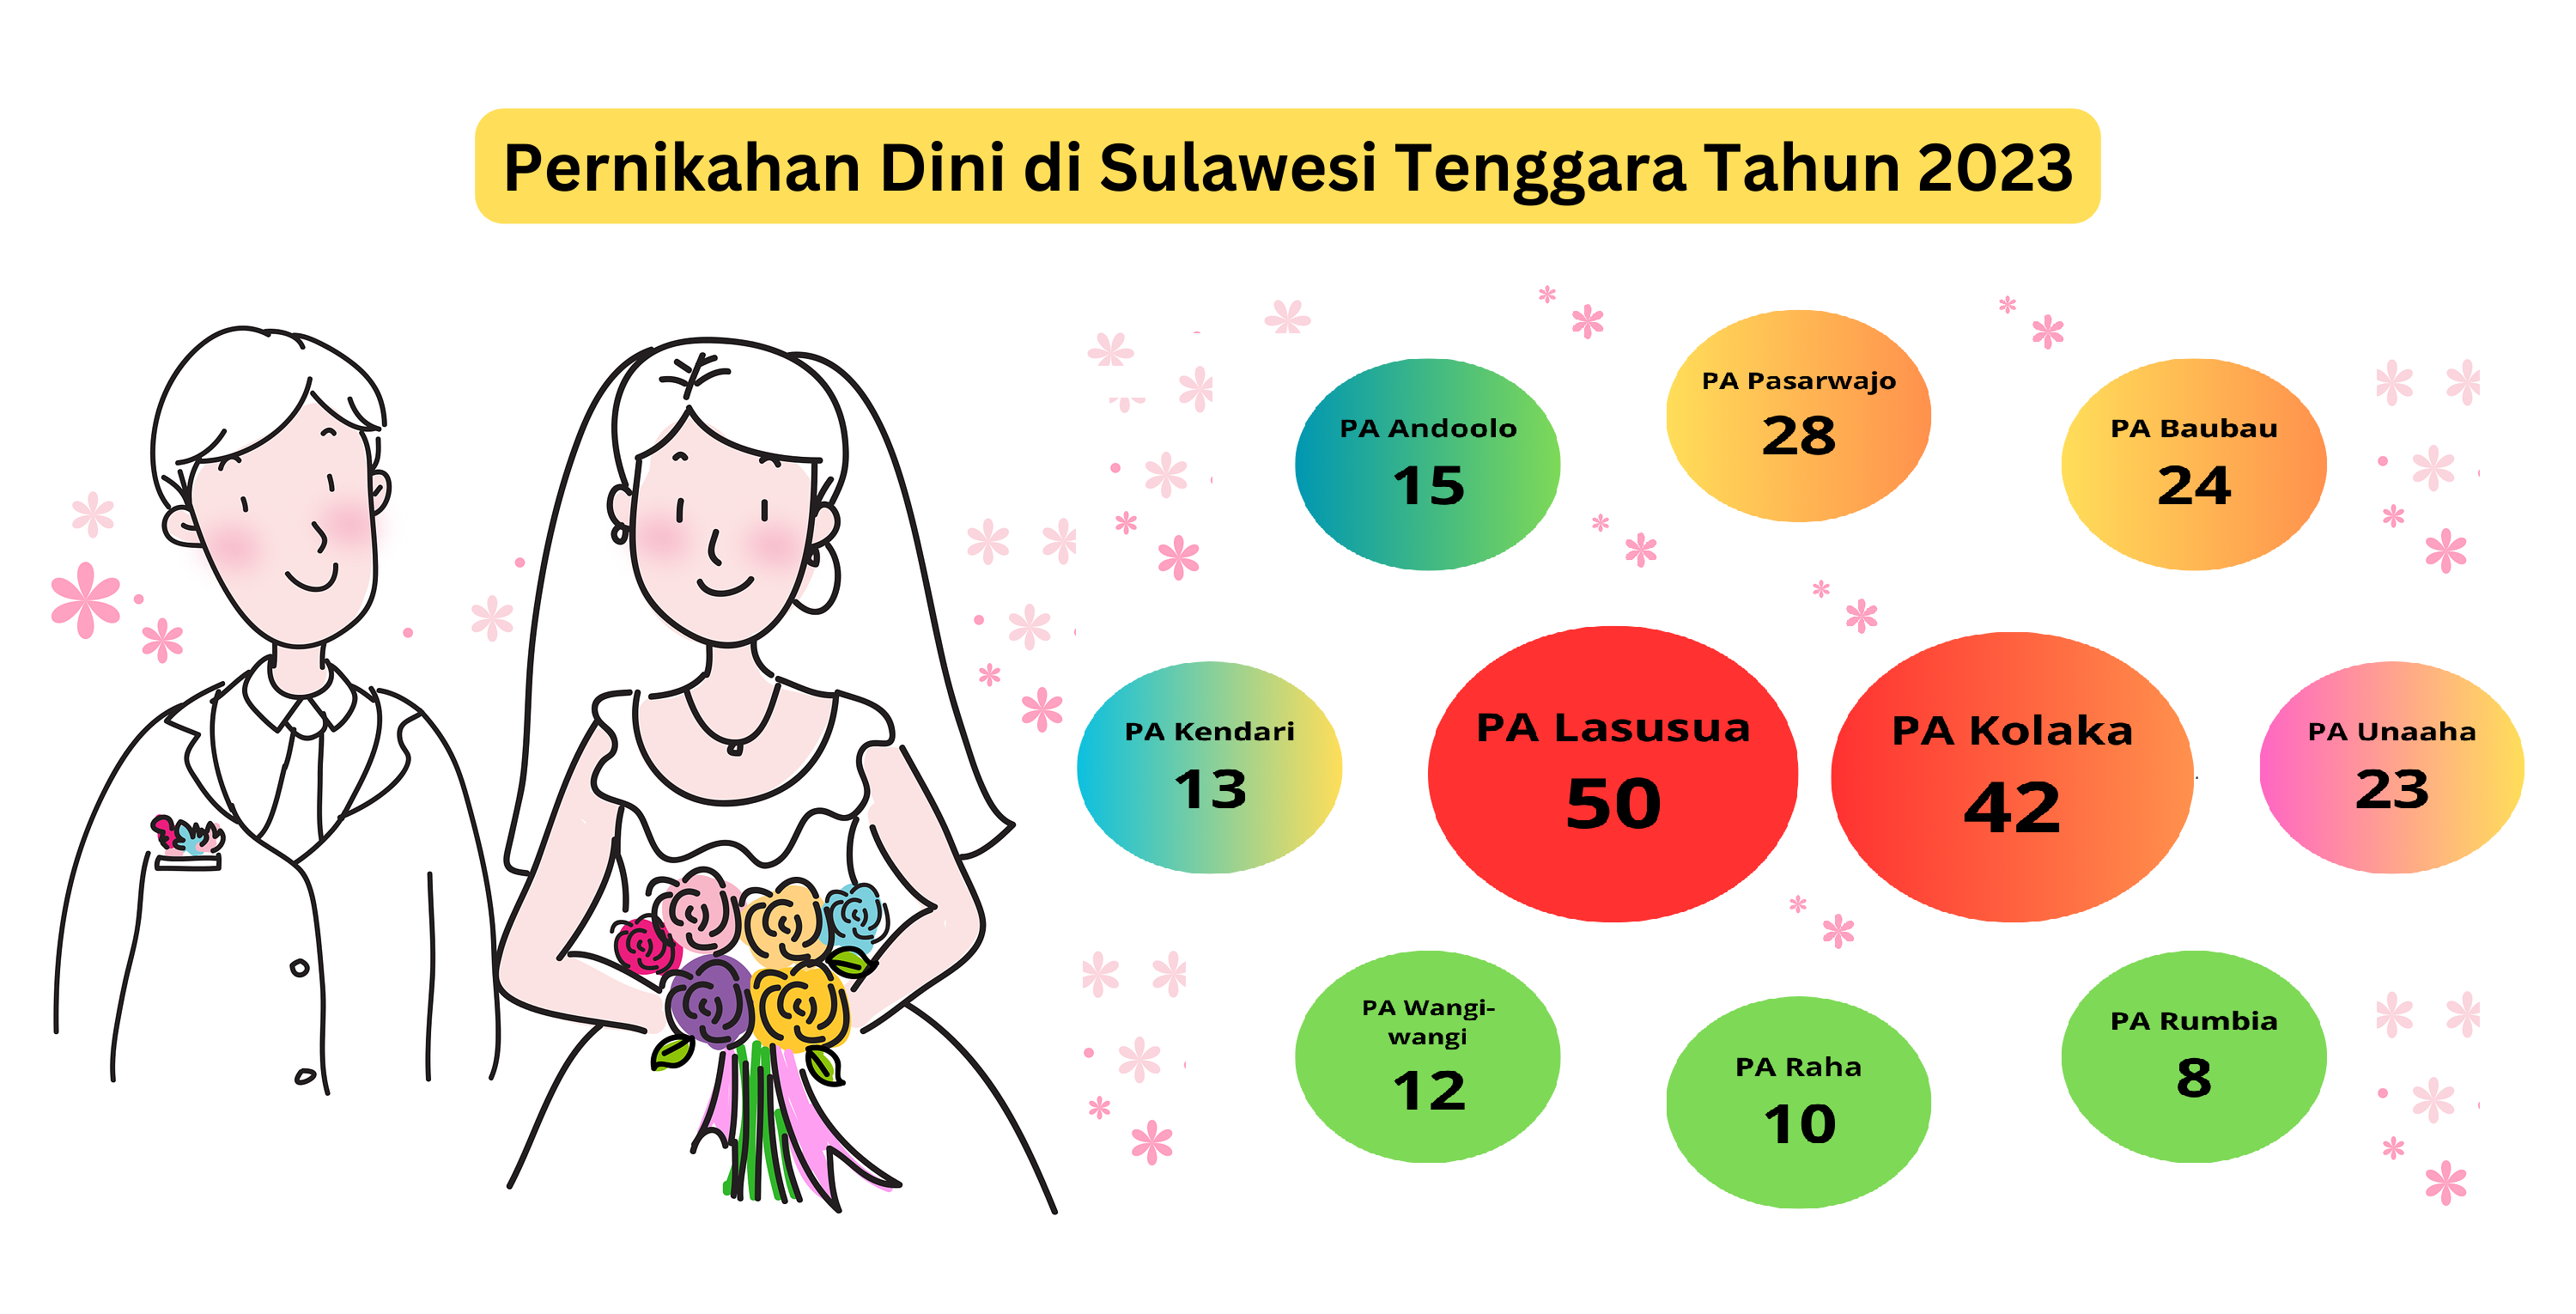 Pernikahan Dini di Sulawesi Tenggara